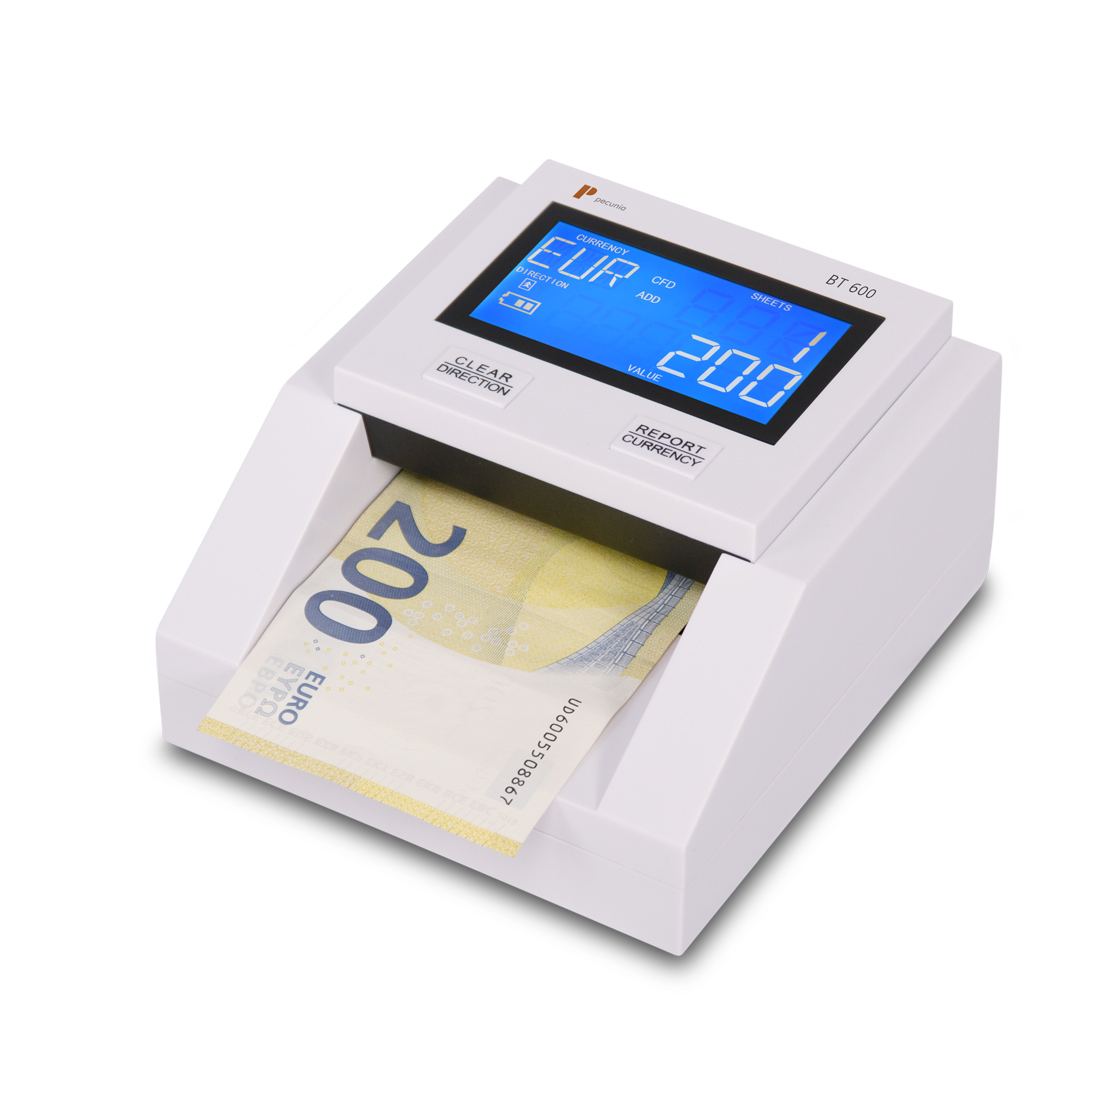 Counterfeit detector Pecunia BT 600 Plus